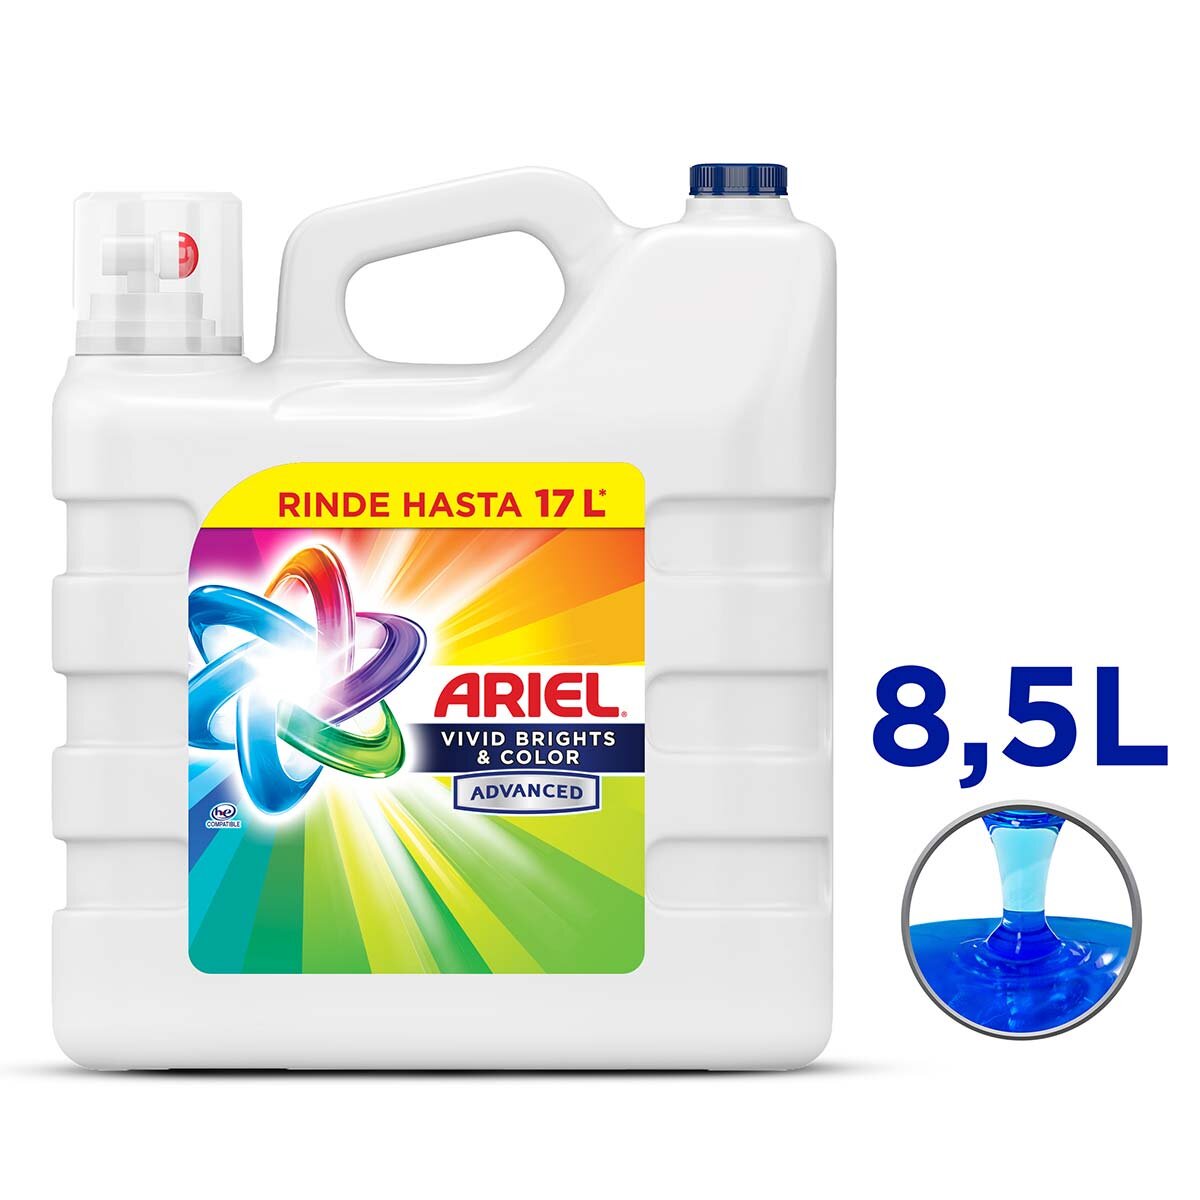 Ariel Revitacolor Detergente Líquido Concentrado Para Lavar Ropa